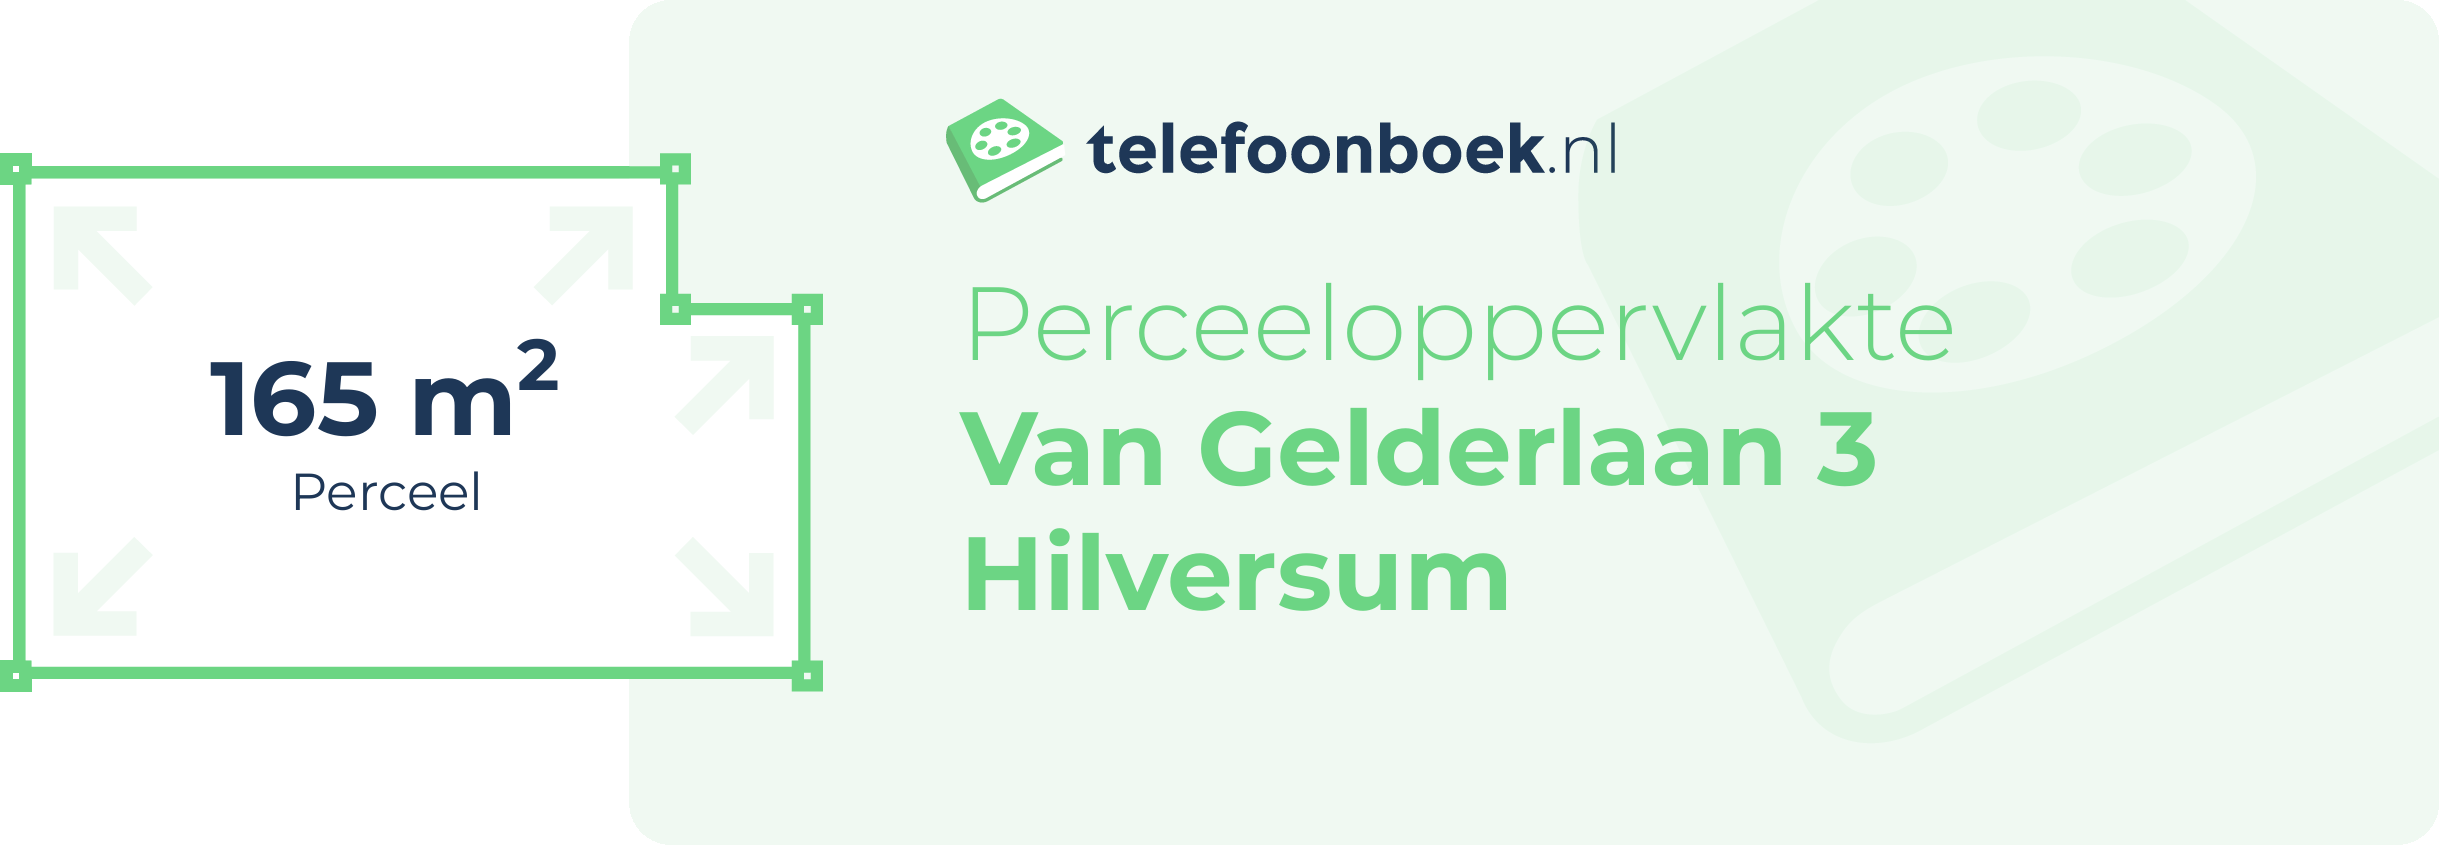 Perceeloppervlakte Van Gelderlaan 3 Hilversum